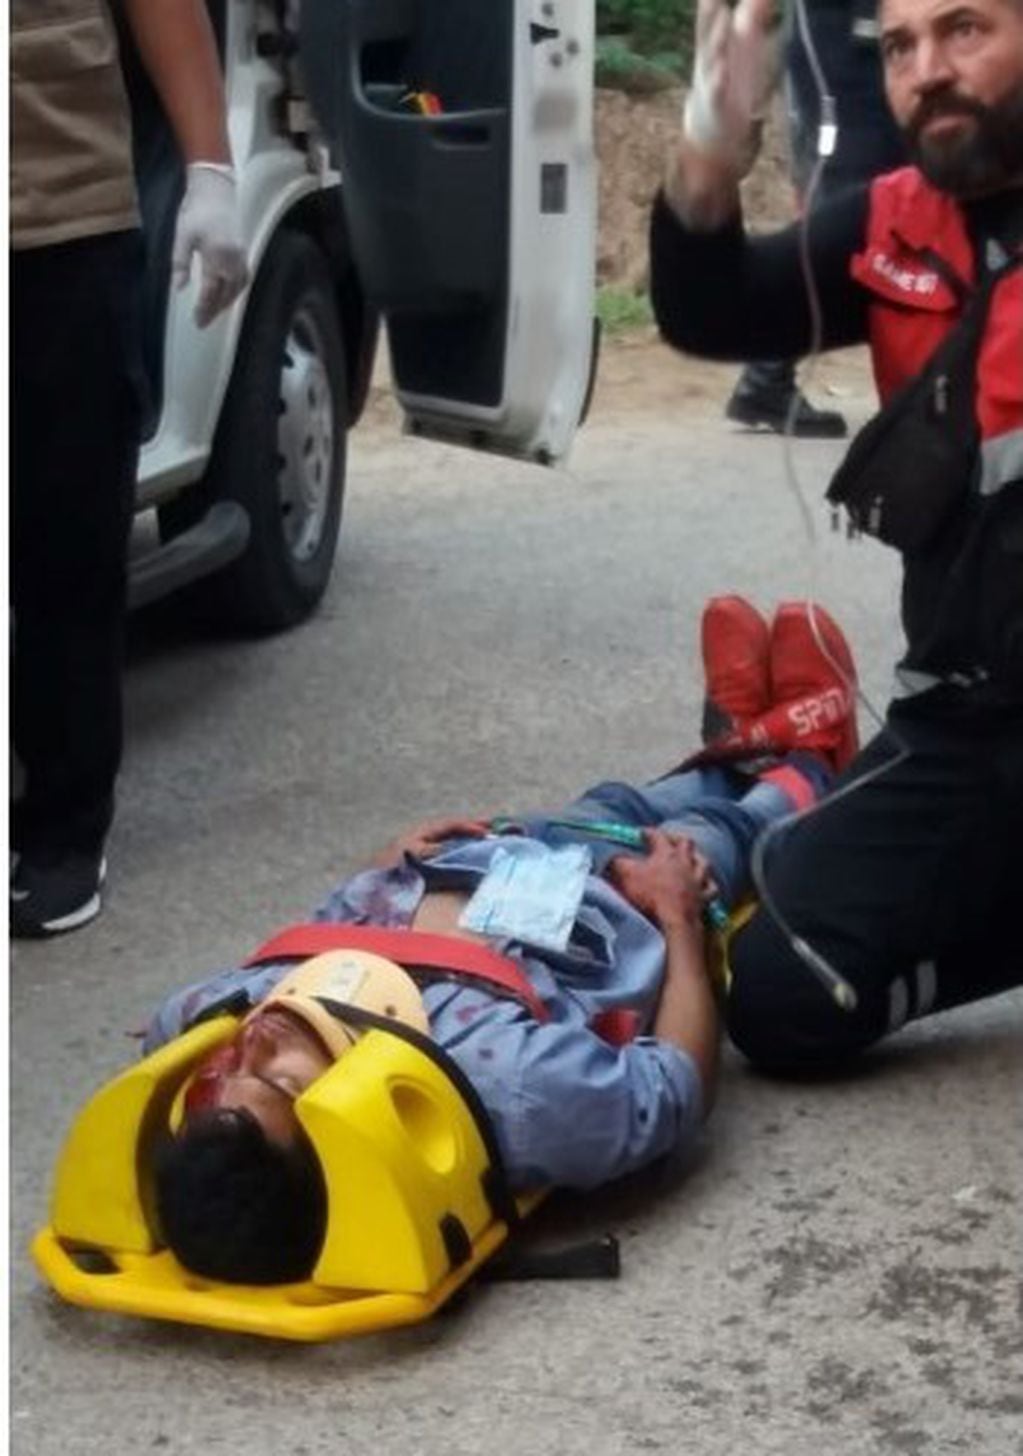 Uno de los ocupantes del vehículo es atendido por el personal del SAME sobre el pavimento, antes de ser trasladado al hospital "Pablo Soria".